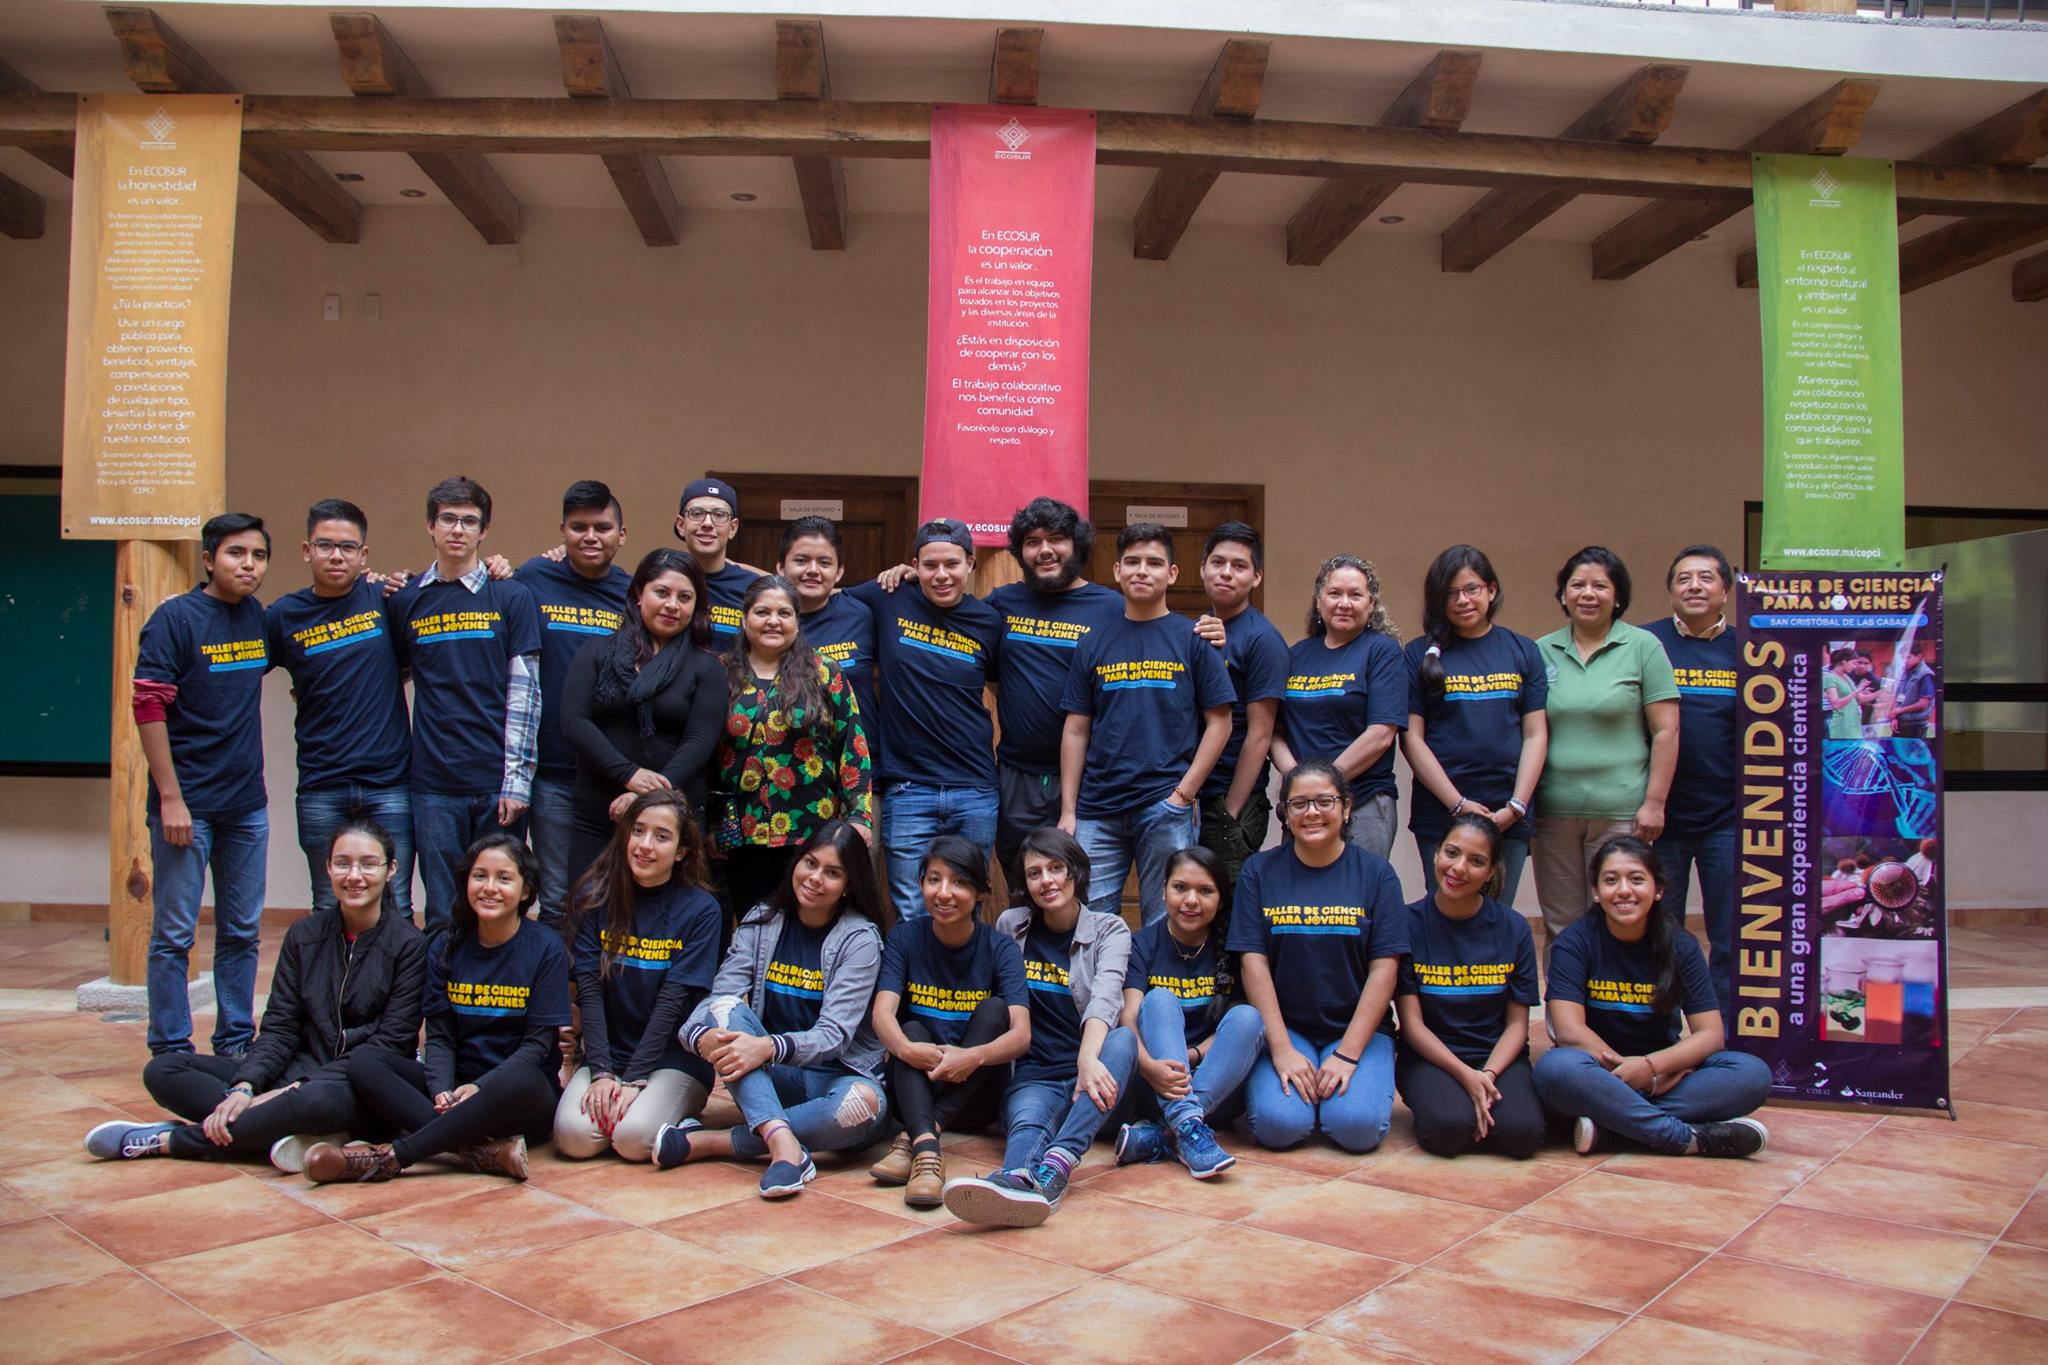 Inicia Taller de Ciencia para Jóvenes en la Unidad San Cristóbal